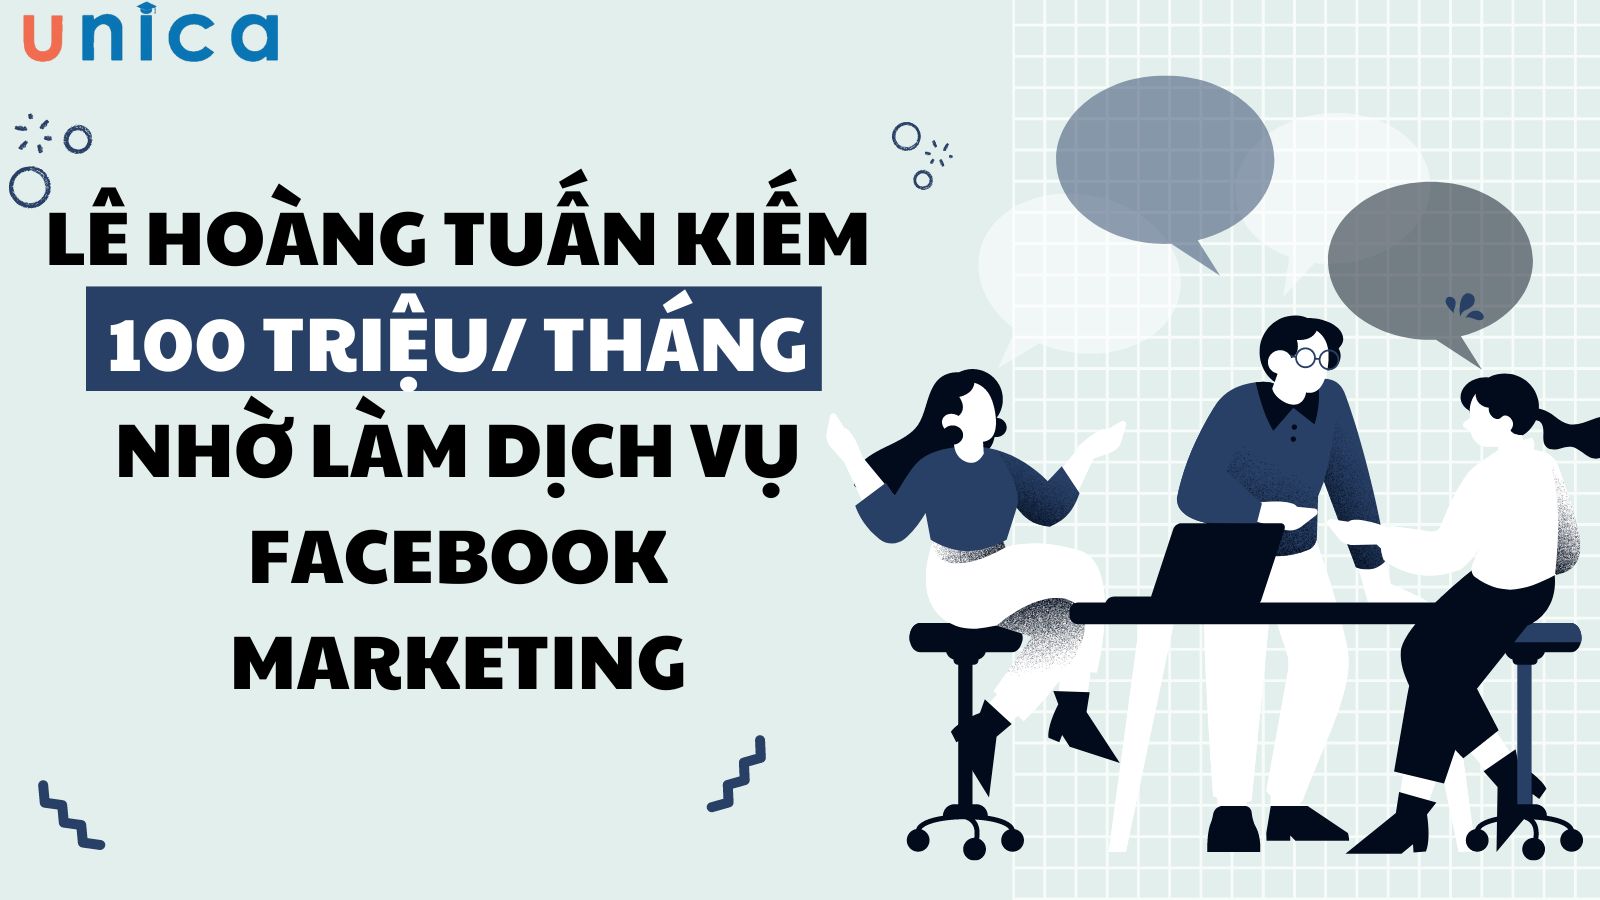 Lê Hoàng Tuấn kiếm 100 triệu/ tháng nhờ làm dịch vụ Facebook Marketing